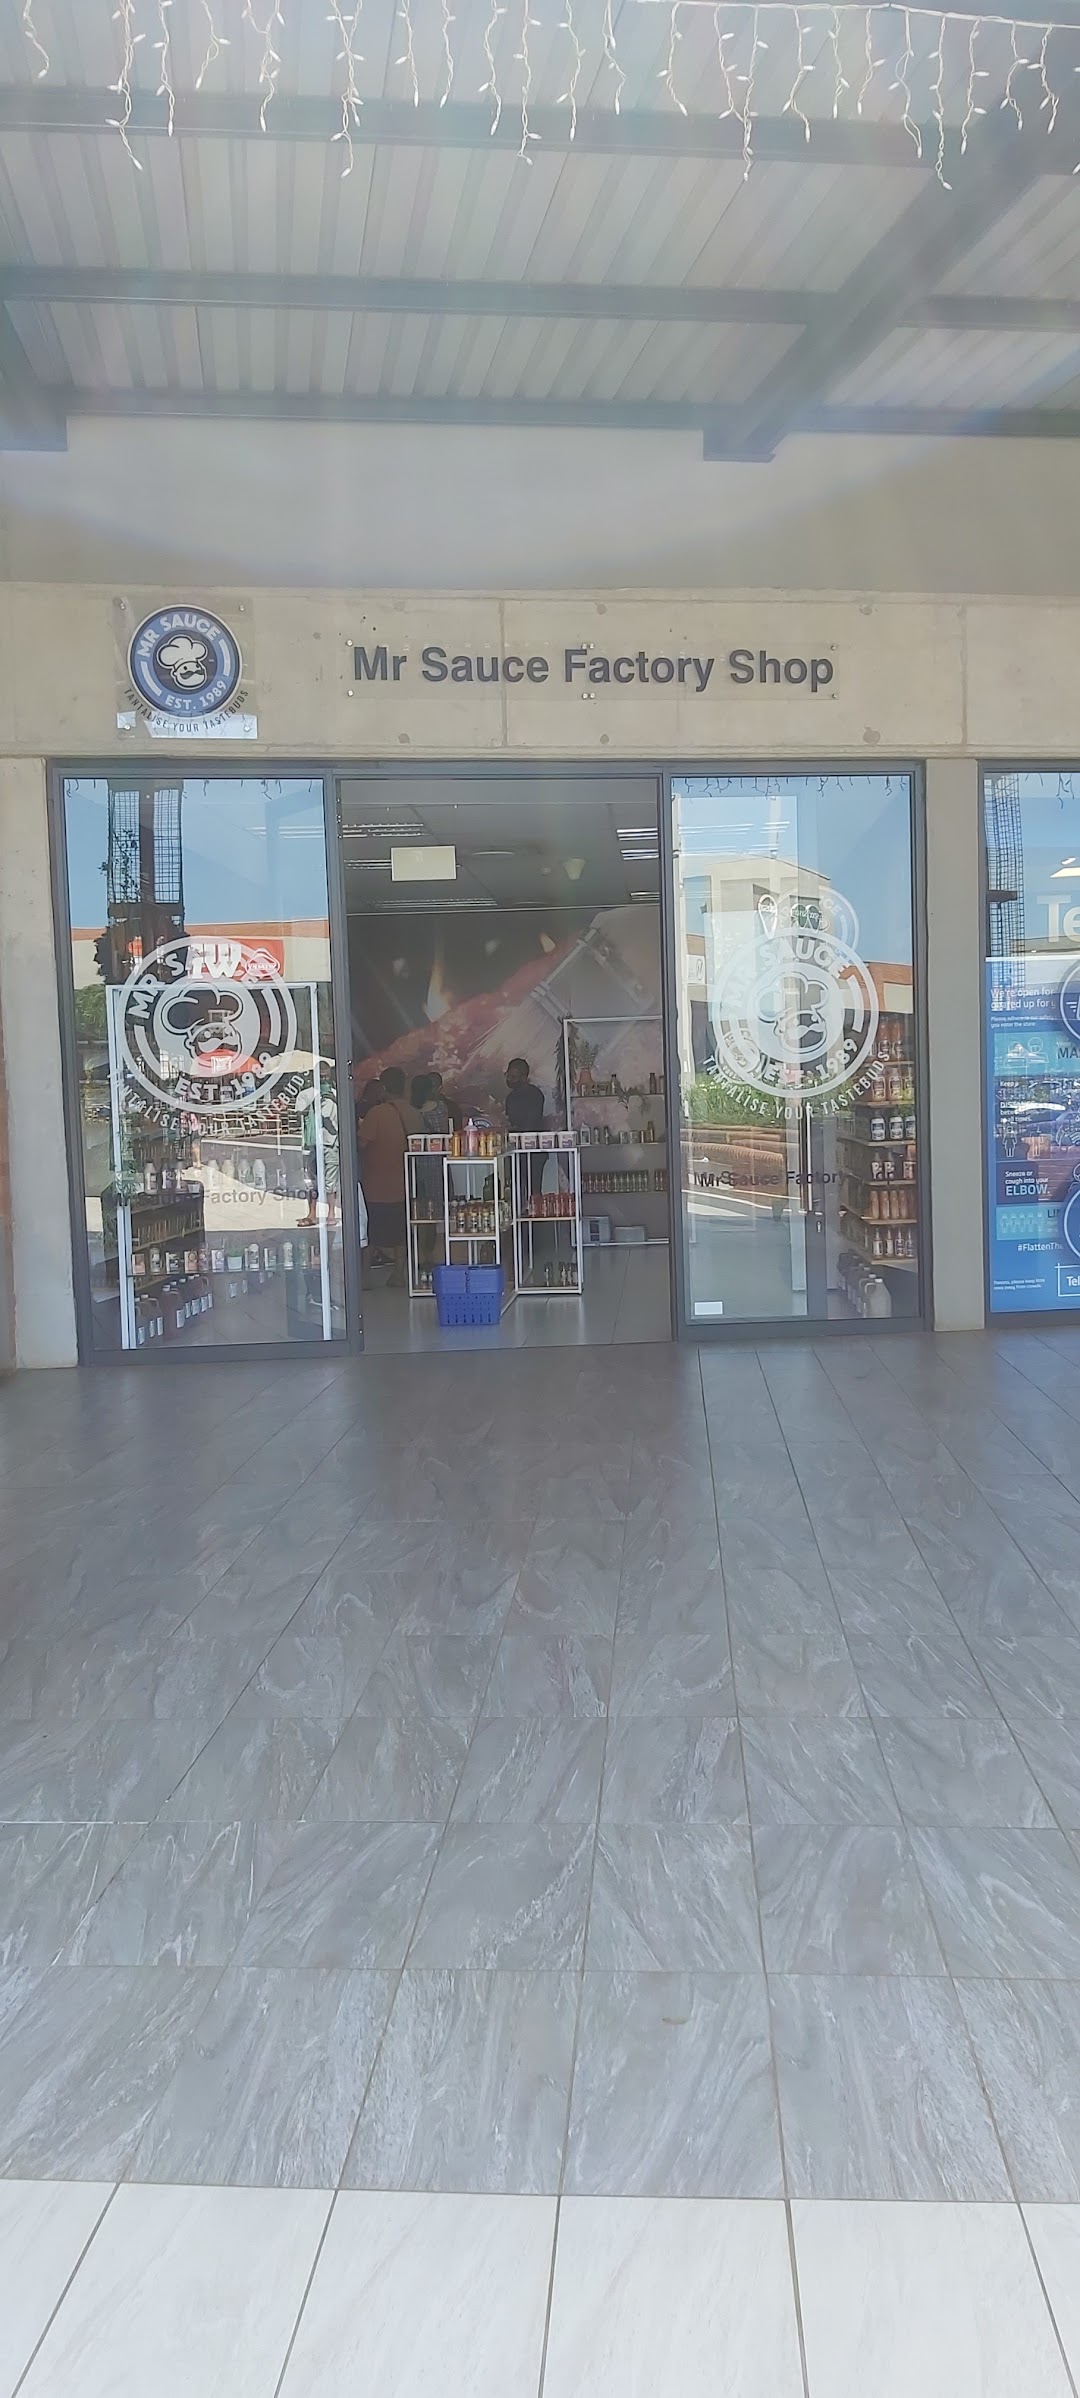 Mr Sauce Factory Shop